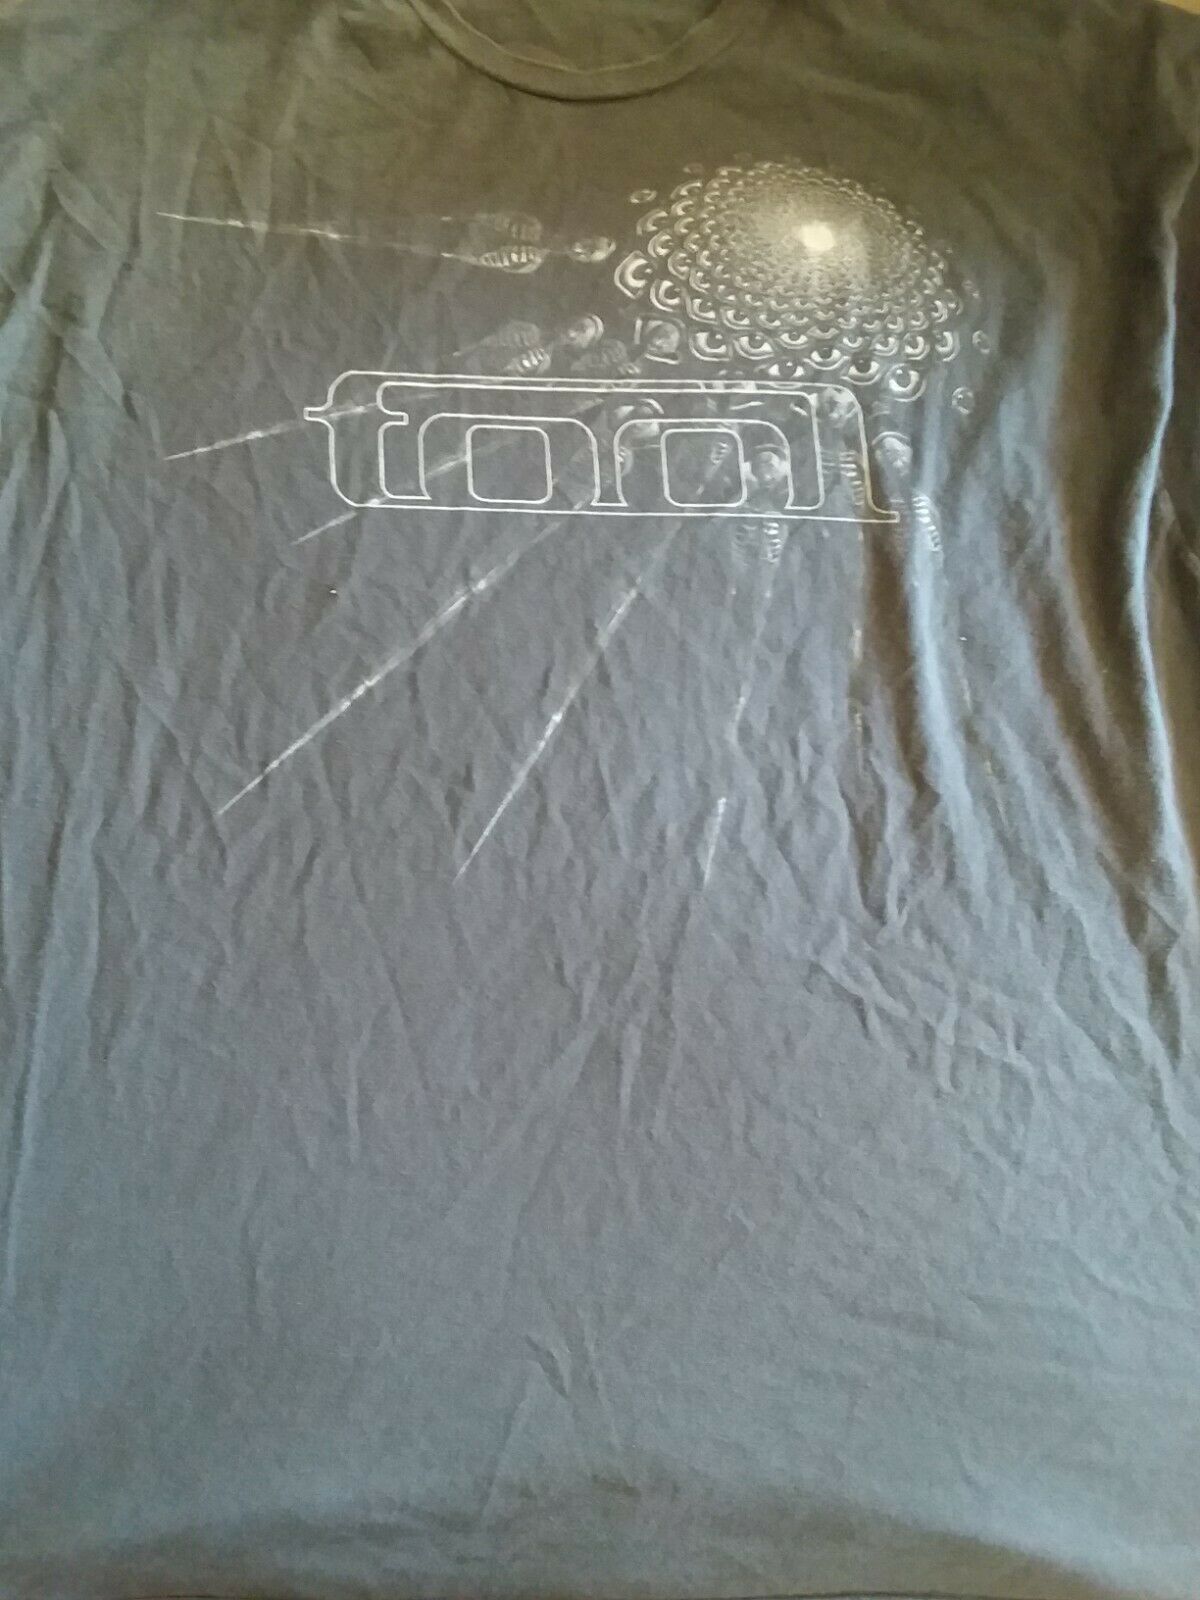 Tool 2017 Grey Tour T Shirt Size 3xl